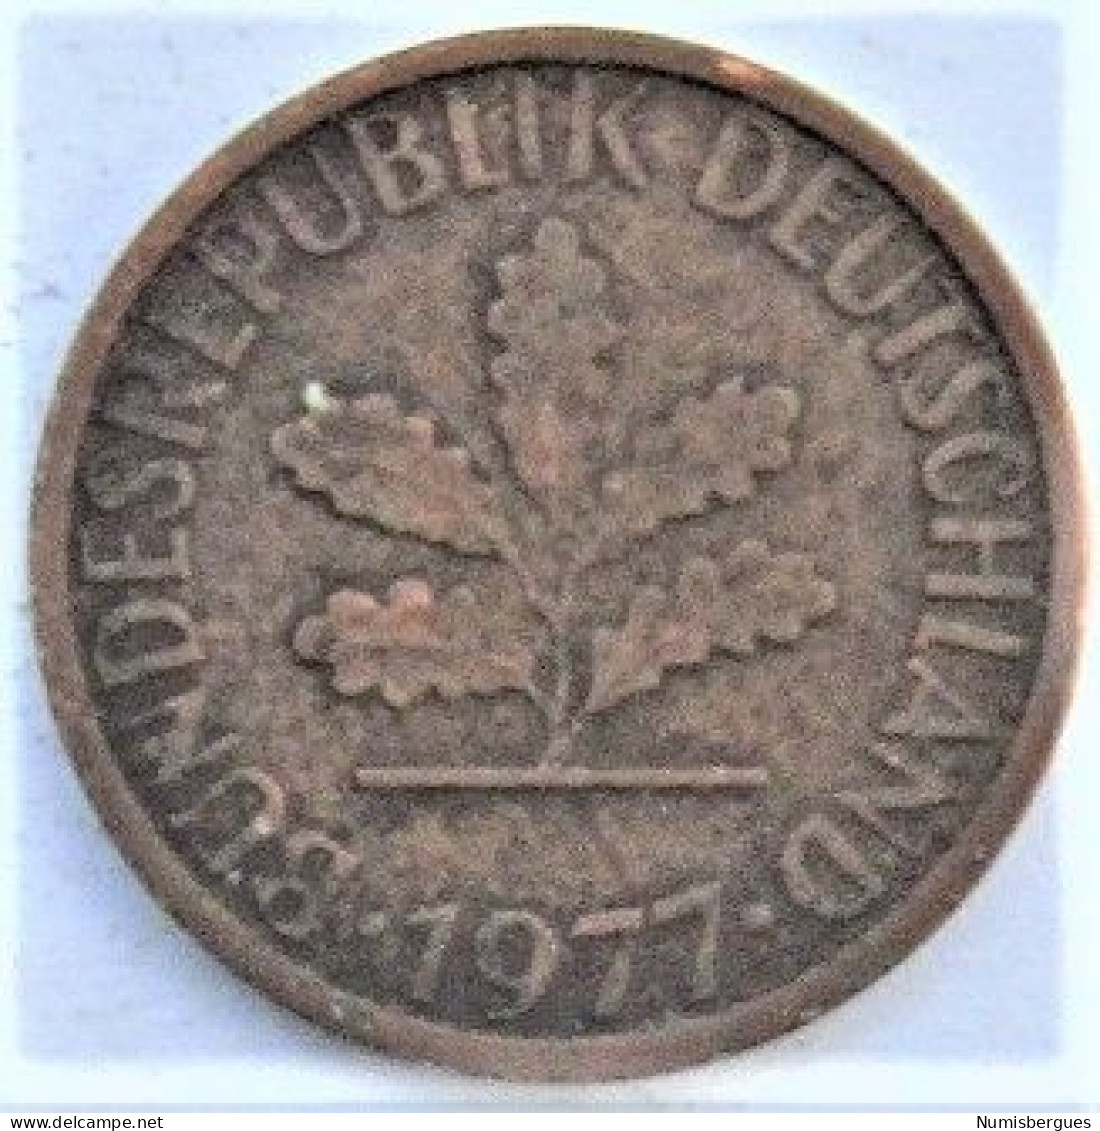 Pièce De Monnaie 1 Pfennig 1977 G - 1 Pfennig